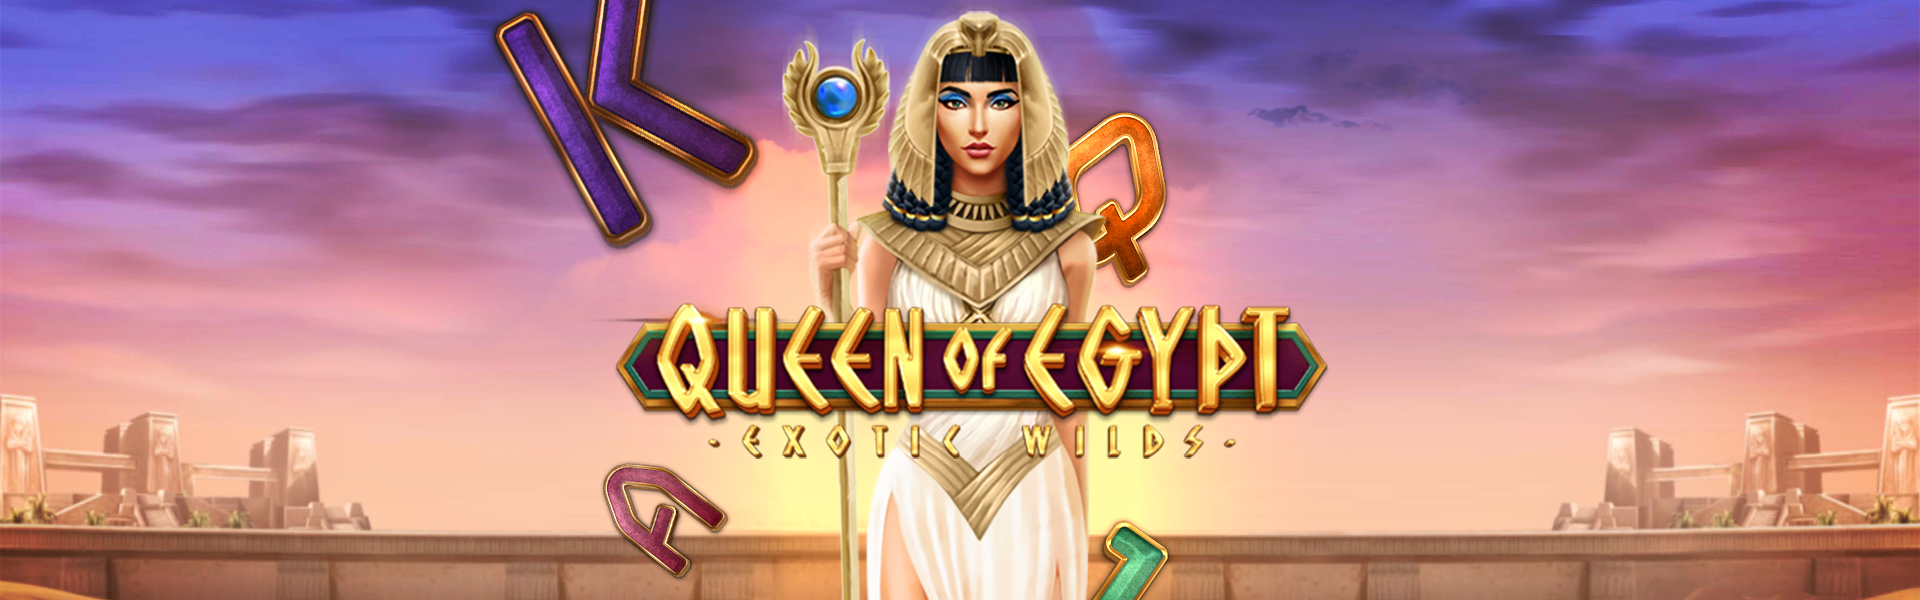 Queen of Egypt Exotic Wilds Screenshot 1